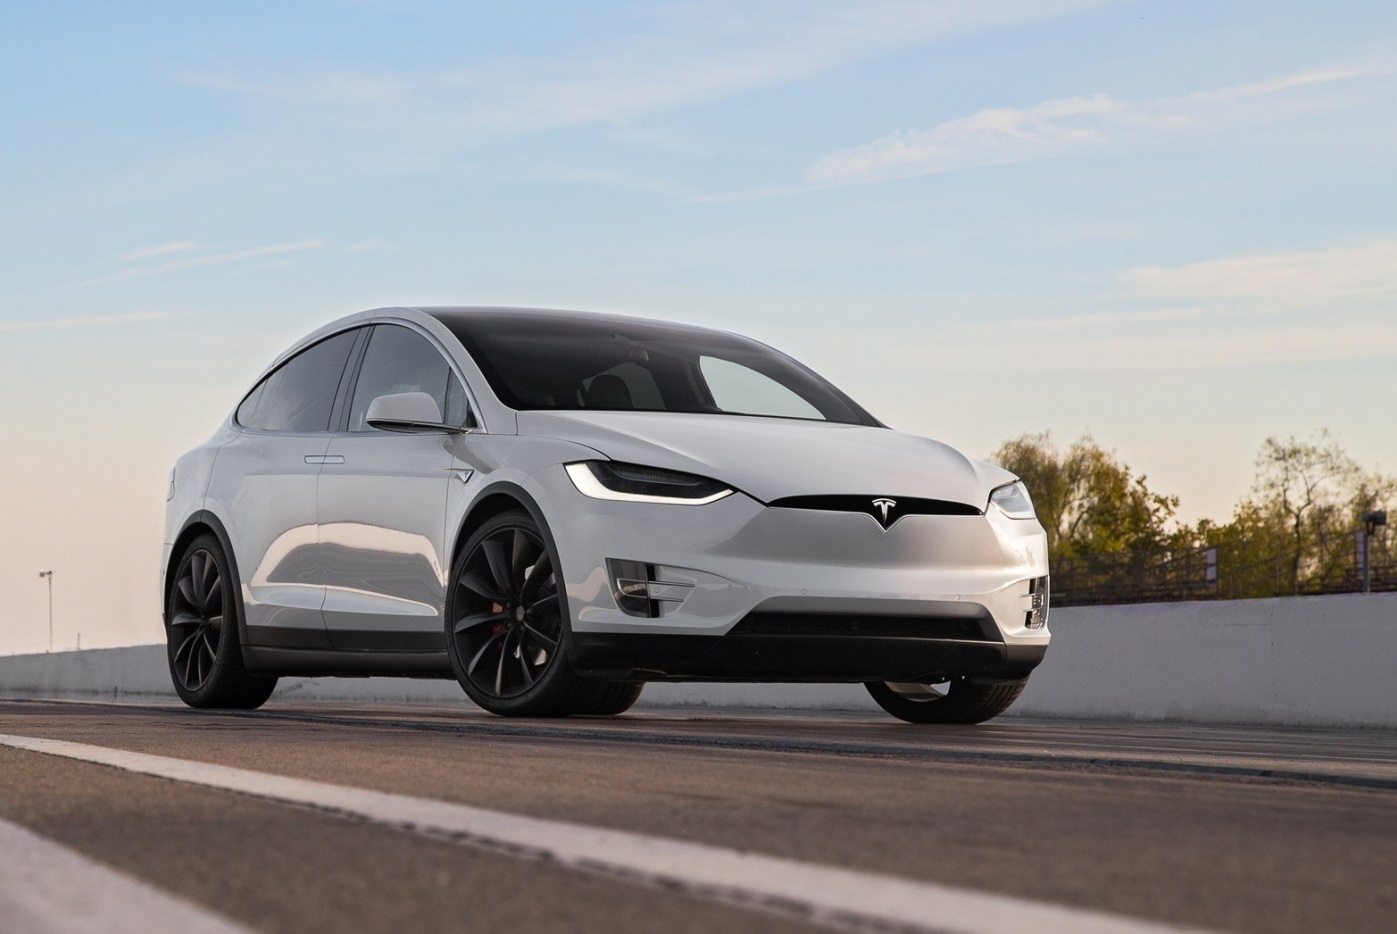 Tesla se ve obligada a retirar casi 12.000 vehículos por problemas de frenos